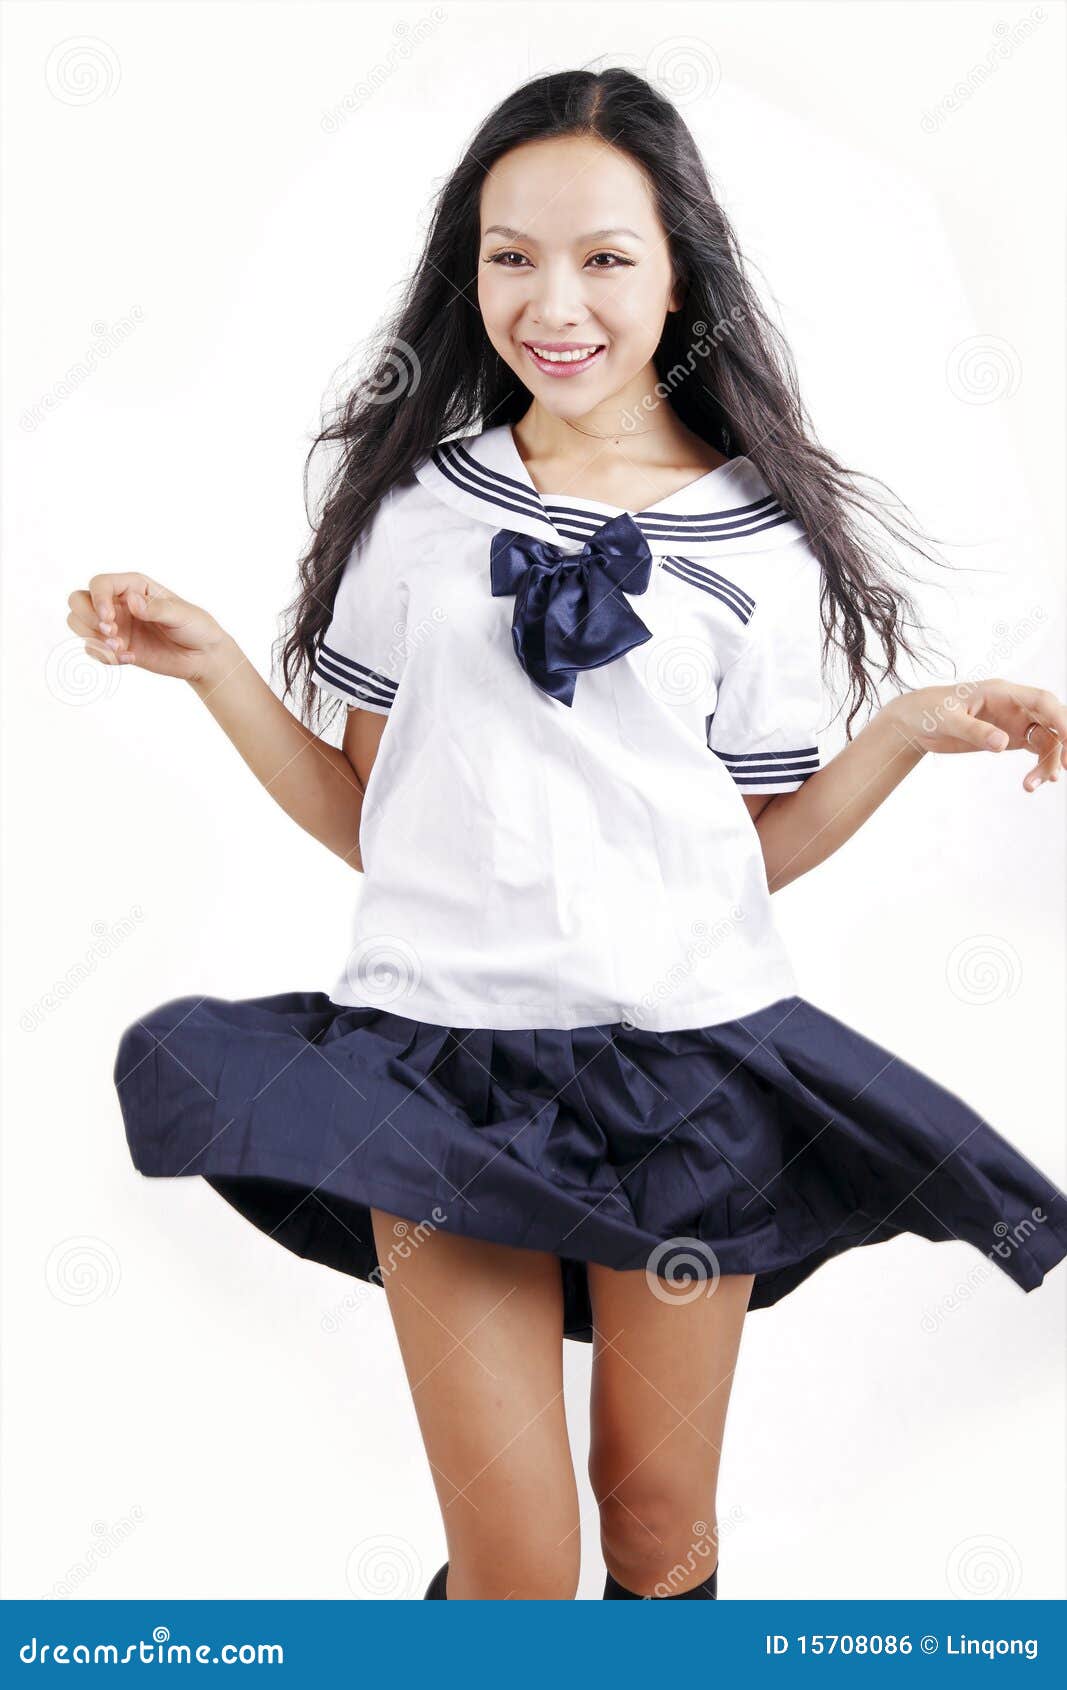 Schoolgirl Dance Best Adult Free Image Telegraph 